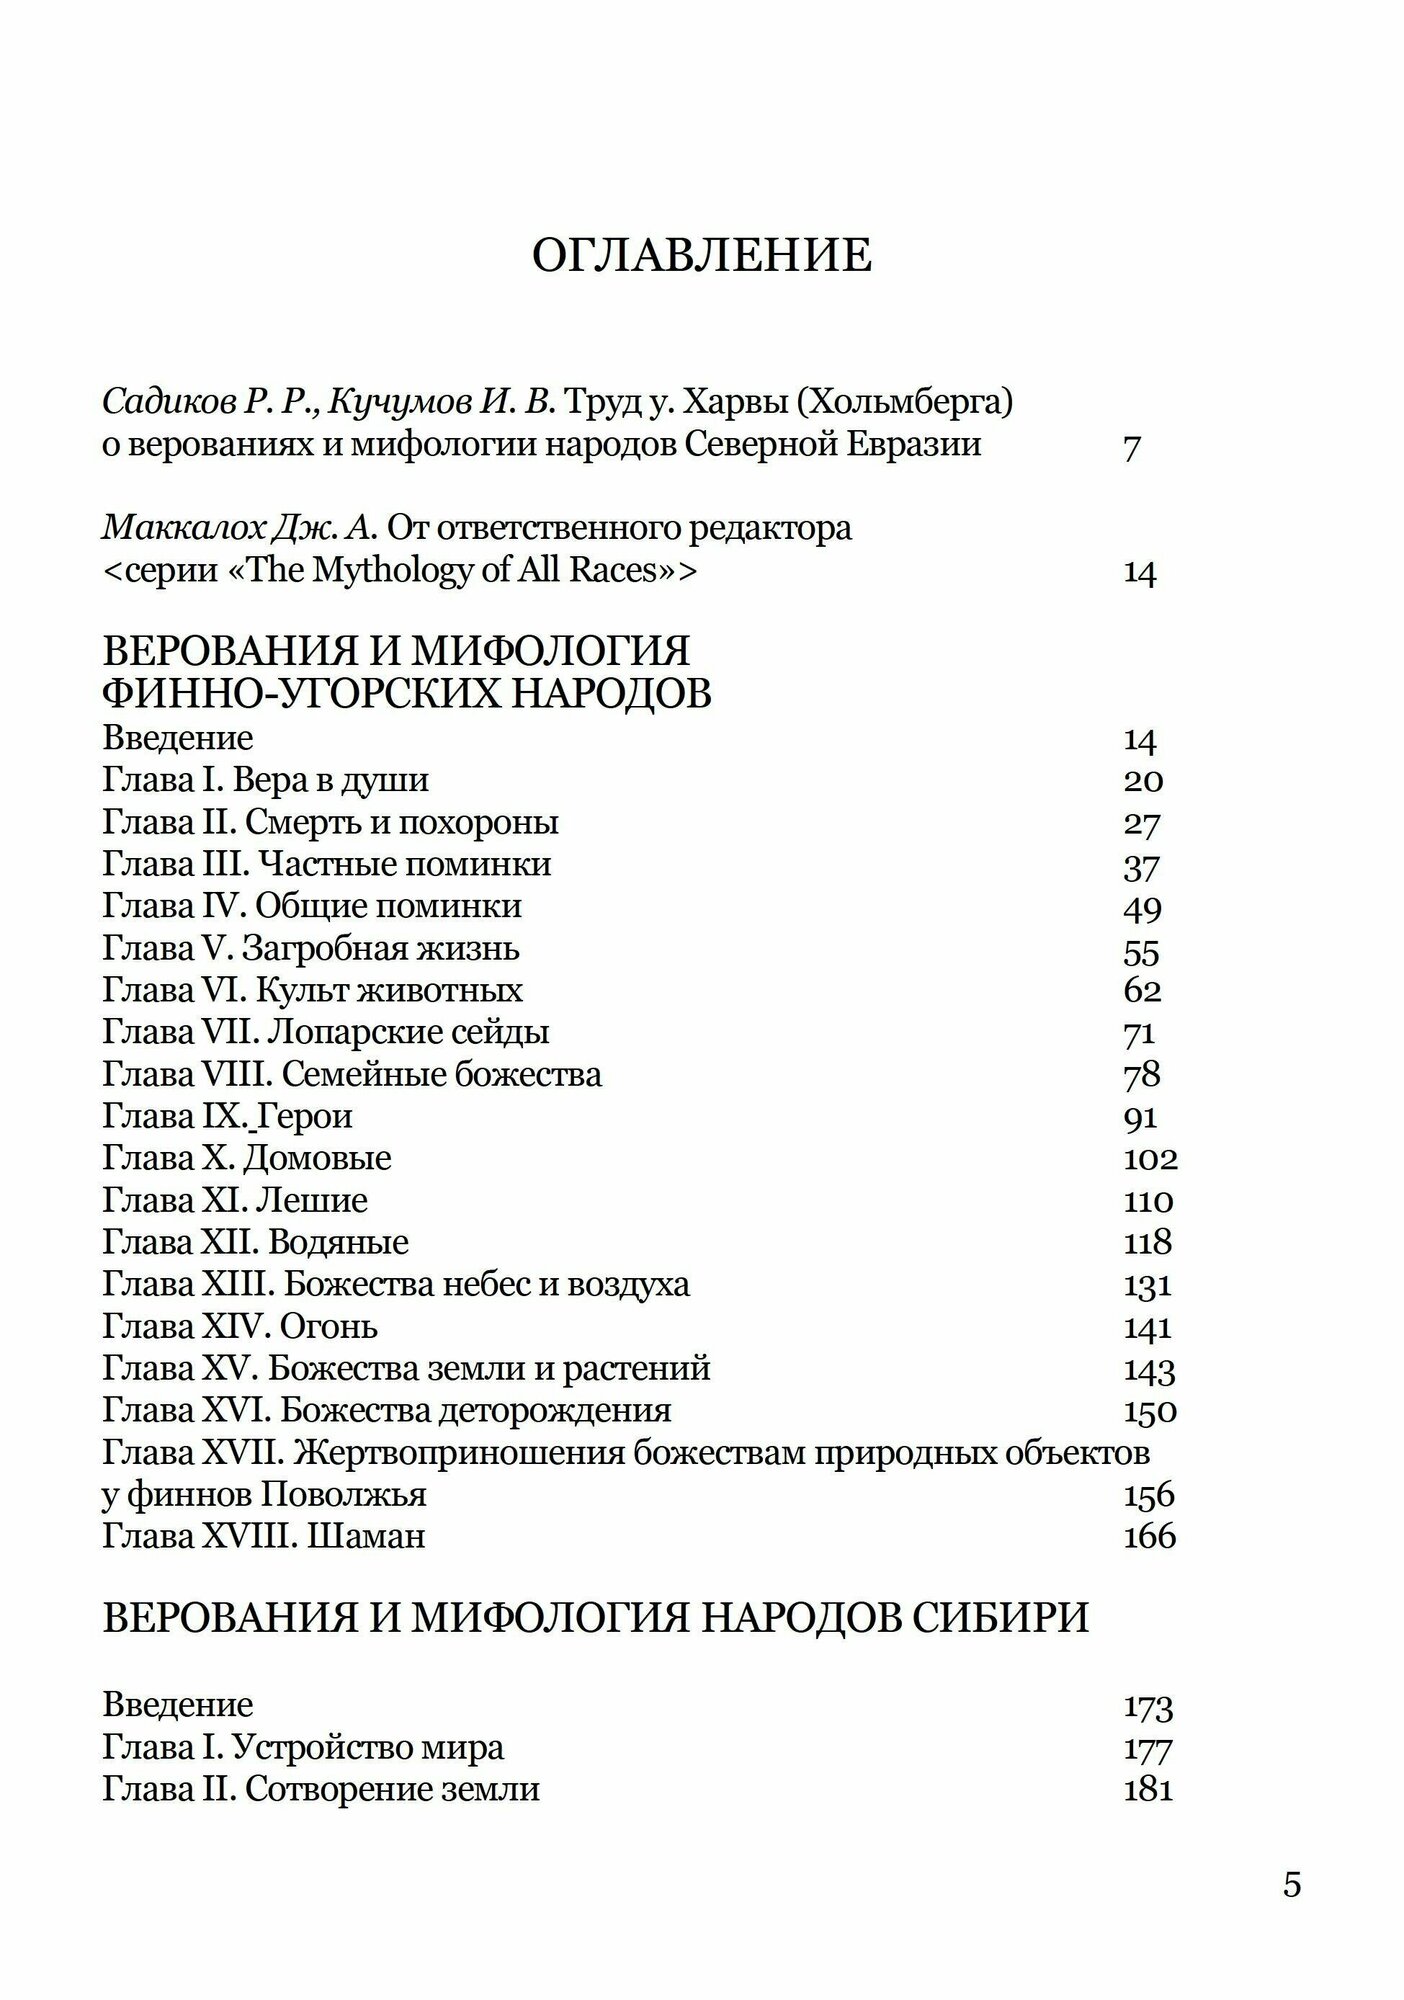 Верования и мифология народов Северной Евразии - фото №2